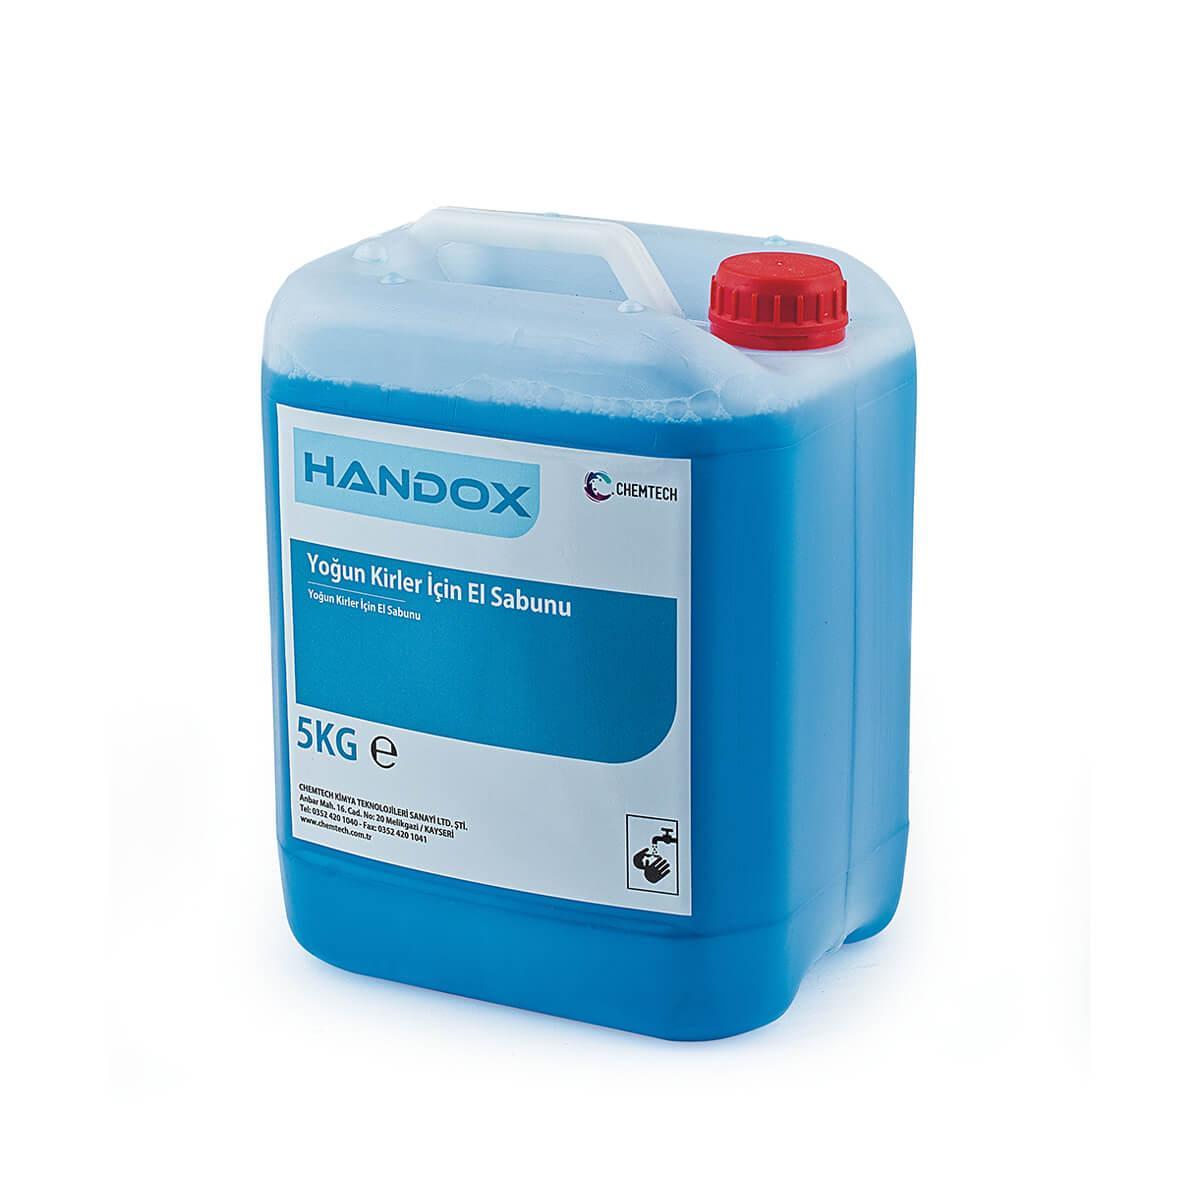 Handox Yoğun Kirli Eller İçin El Sabunu CH-11029